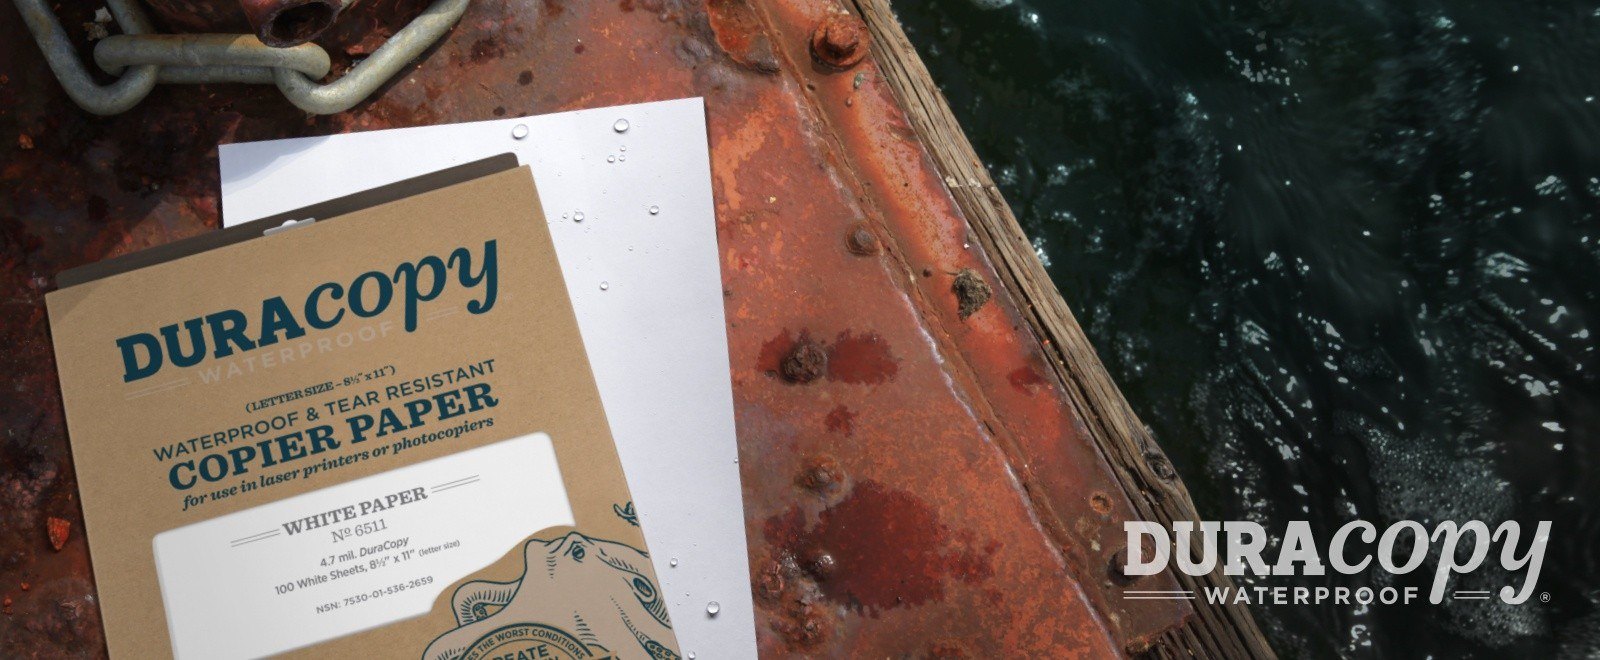 Soaked DuraCopy waterproof paper on industrial dock.